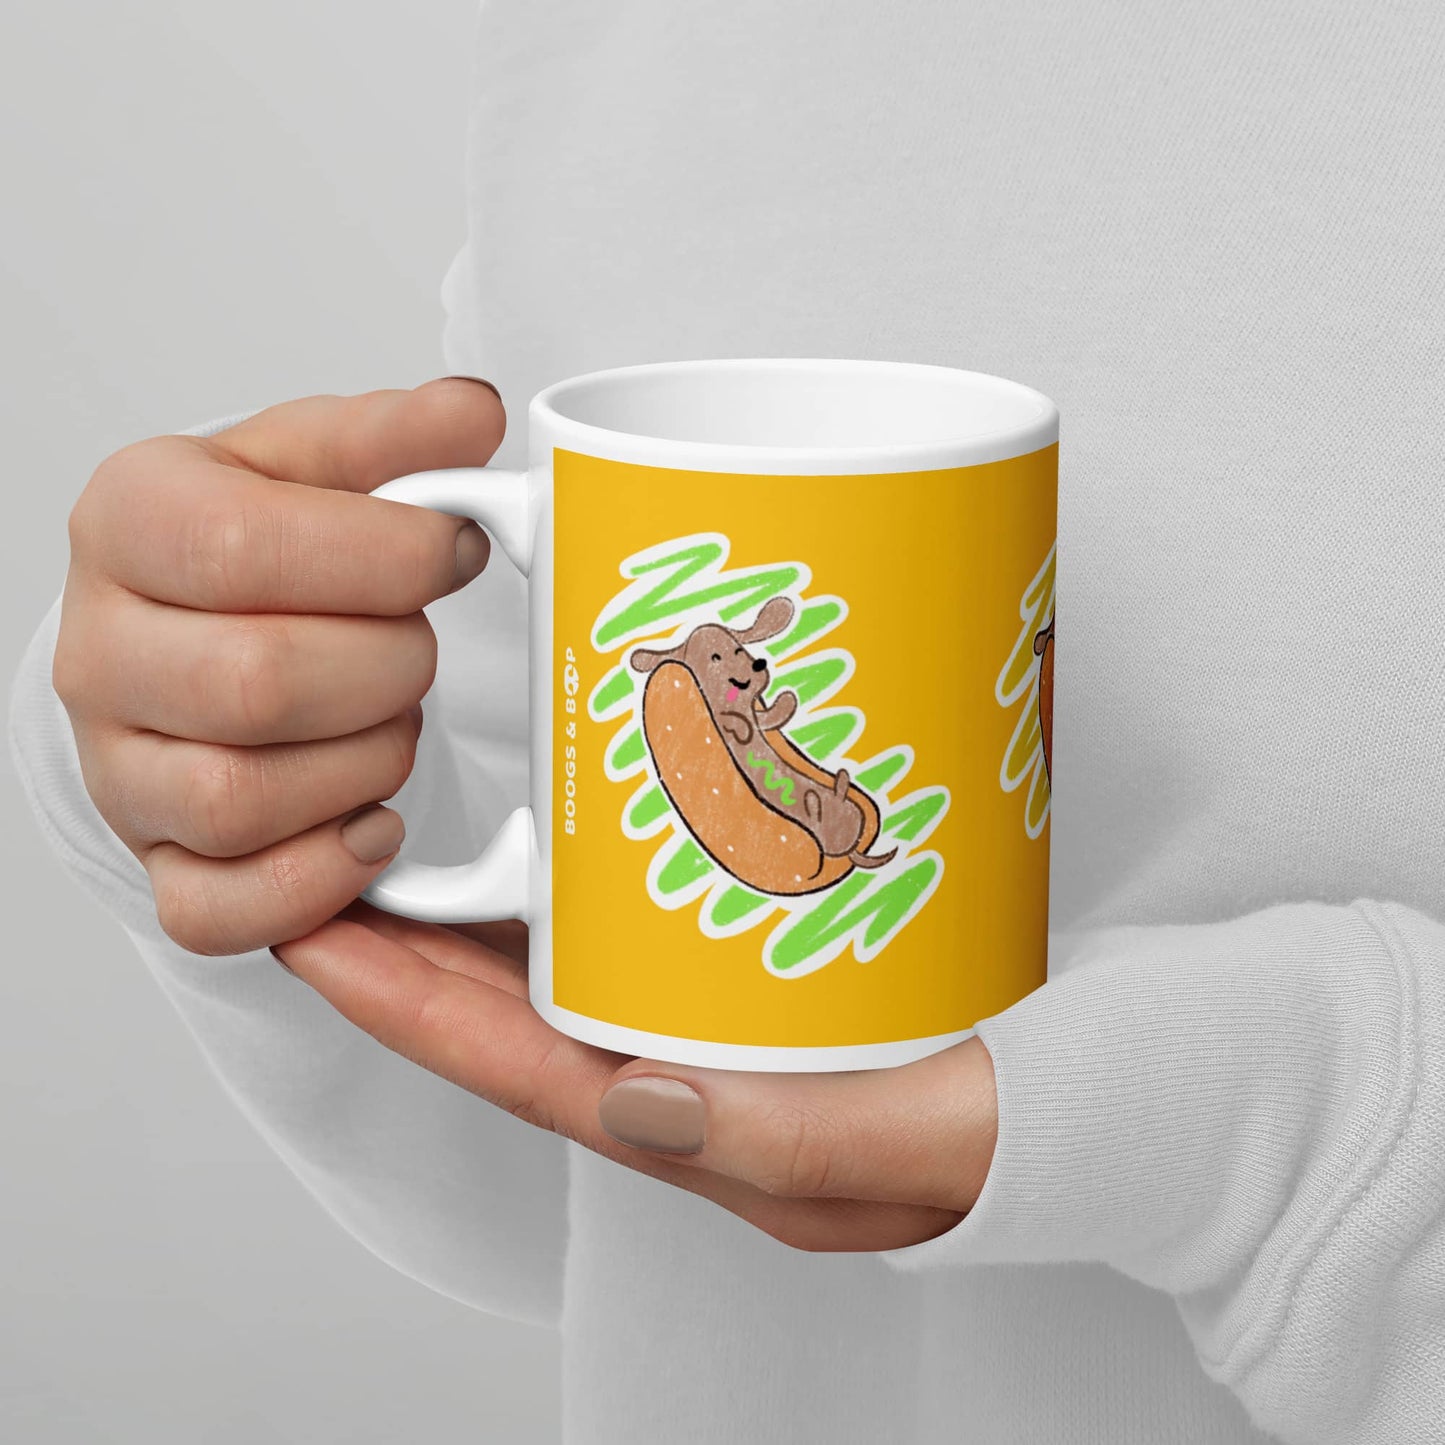 Shop Dachshund Hot Dog Lover Ceramic Mug (11 oz) by Boogs & Boop.